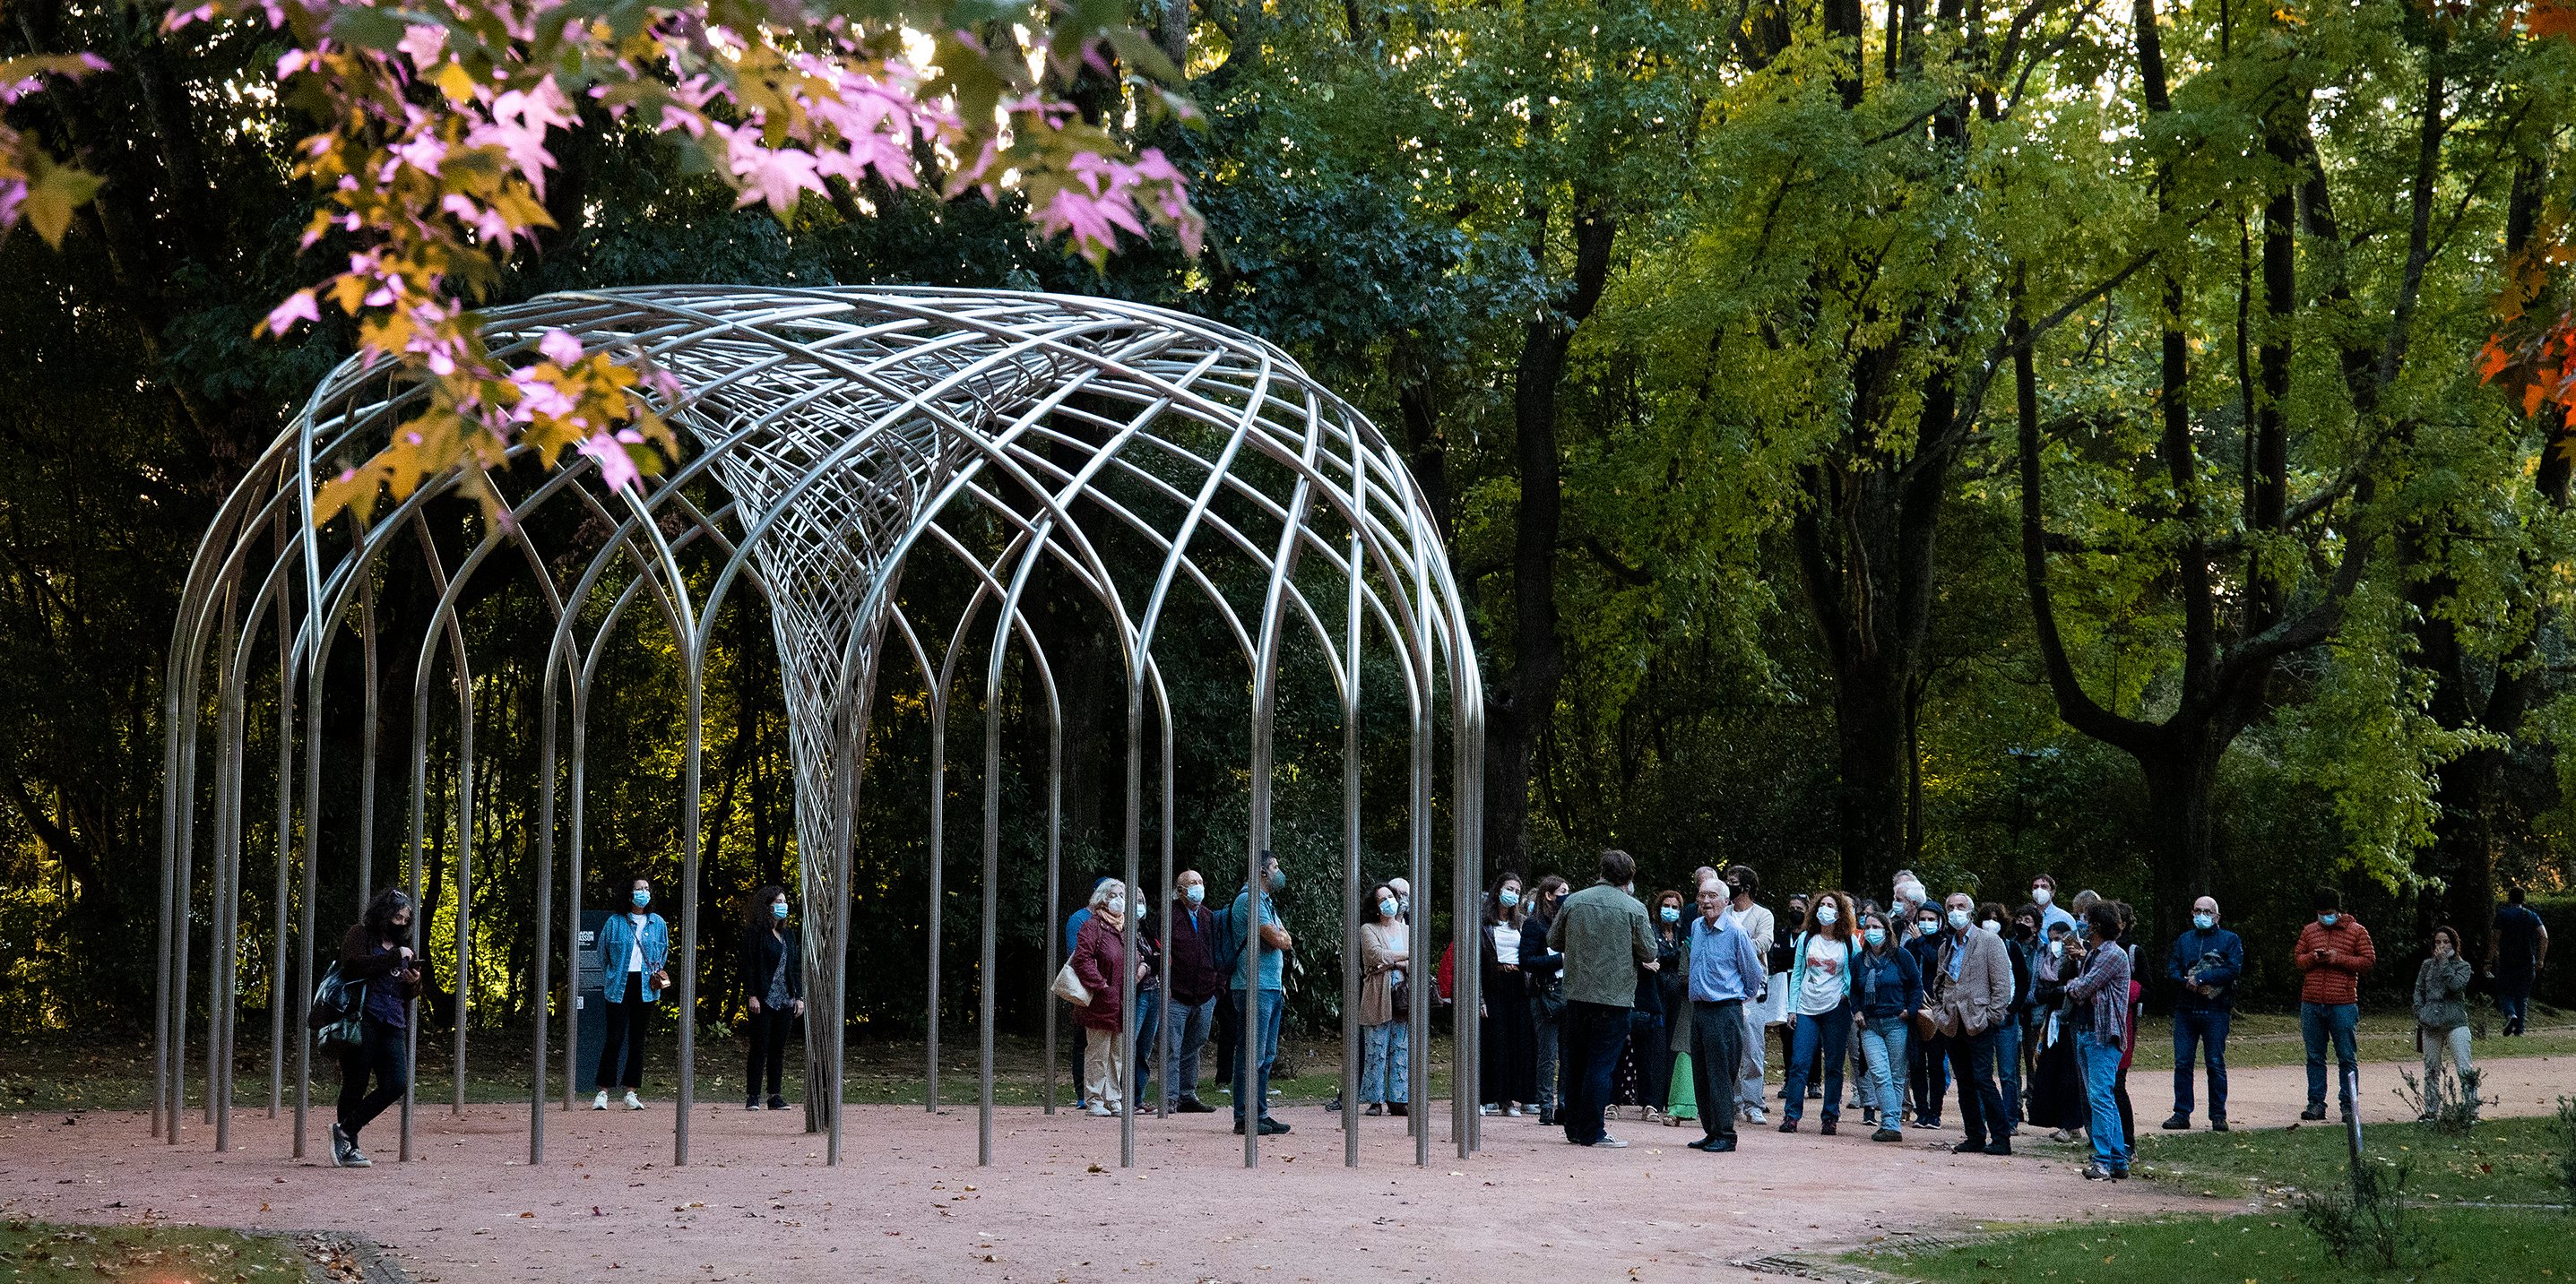 As alterações climáticas, a biodiversidade e a sustentabilidade são temas que vão fazer parte da pedagogia científica que o Parque de Serralves quer passar aos seus visitantes